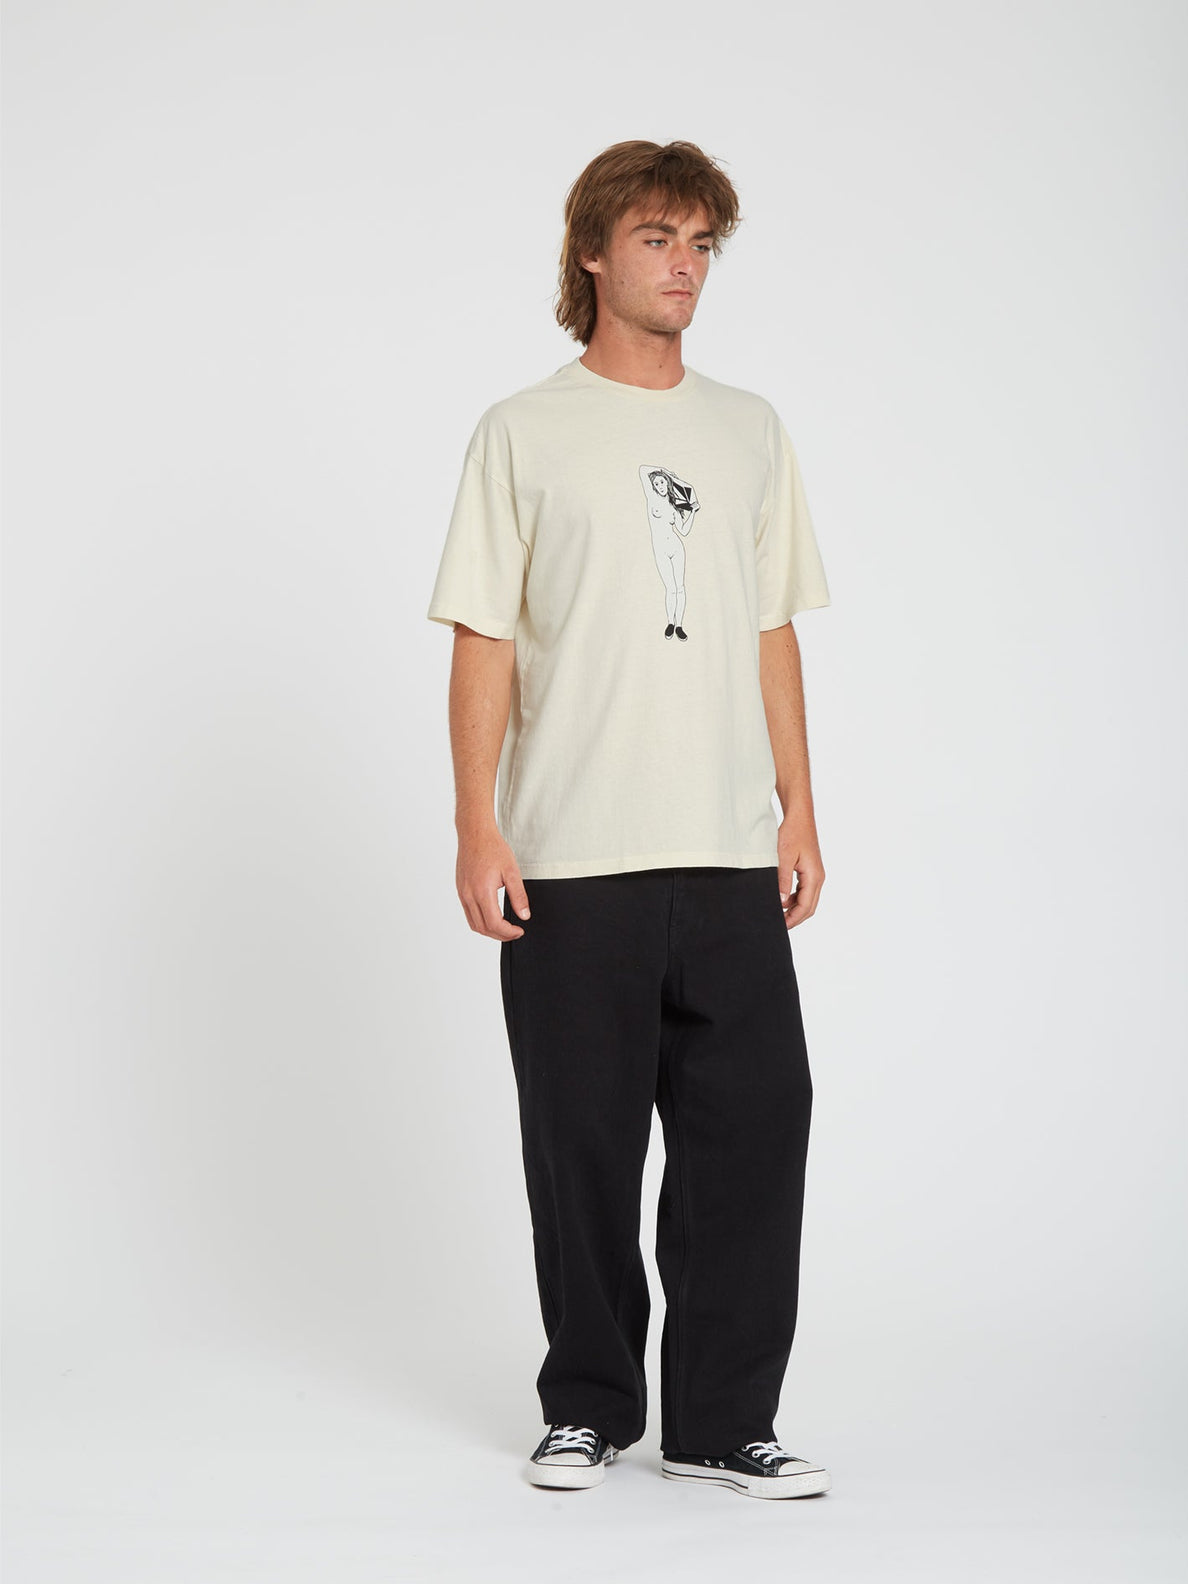 Binik T-shirt - WHITECAP GREY